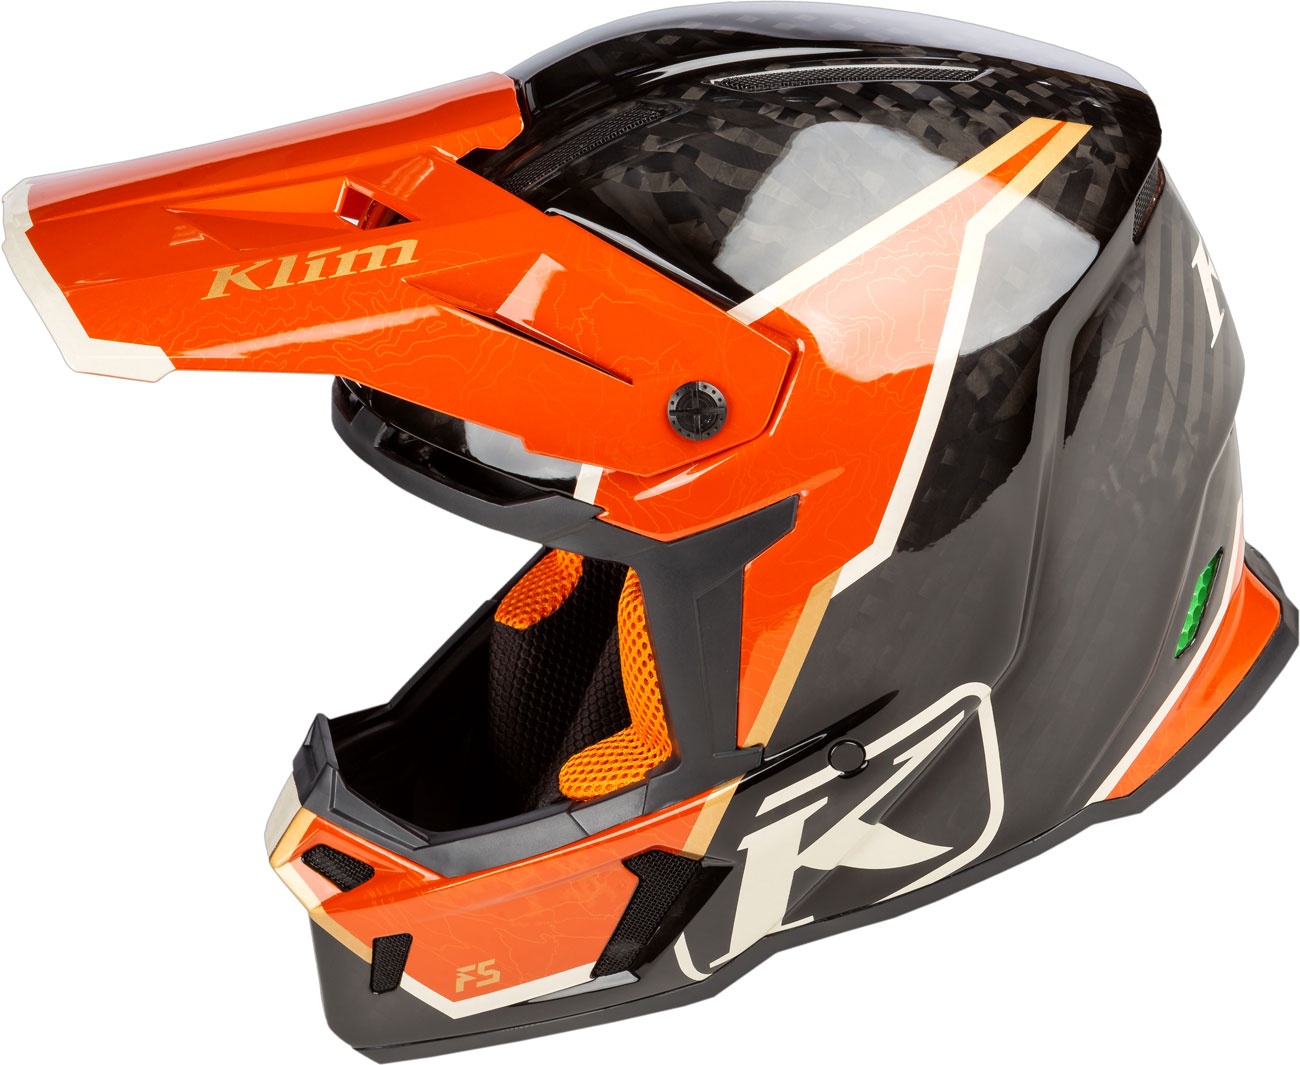 Klim F5 Koroyd Topo, Motocrosshelm - Schwarz/Orange - M